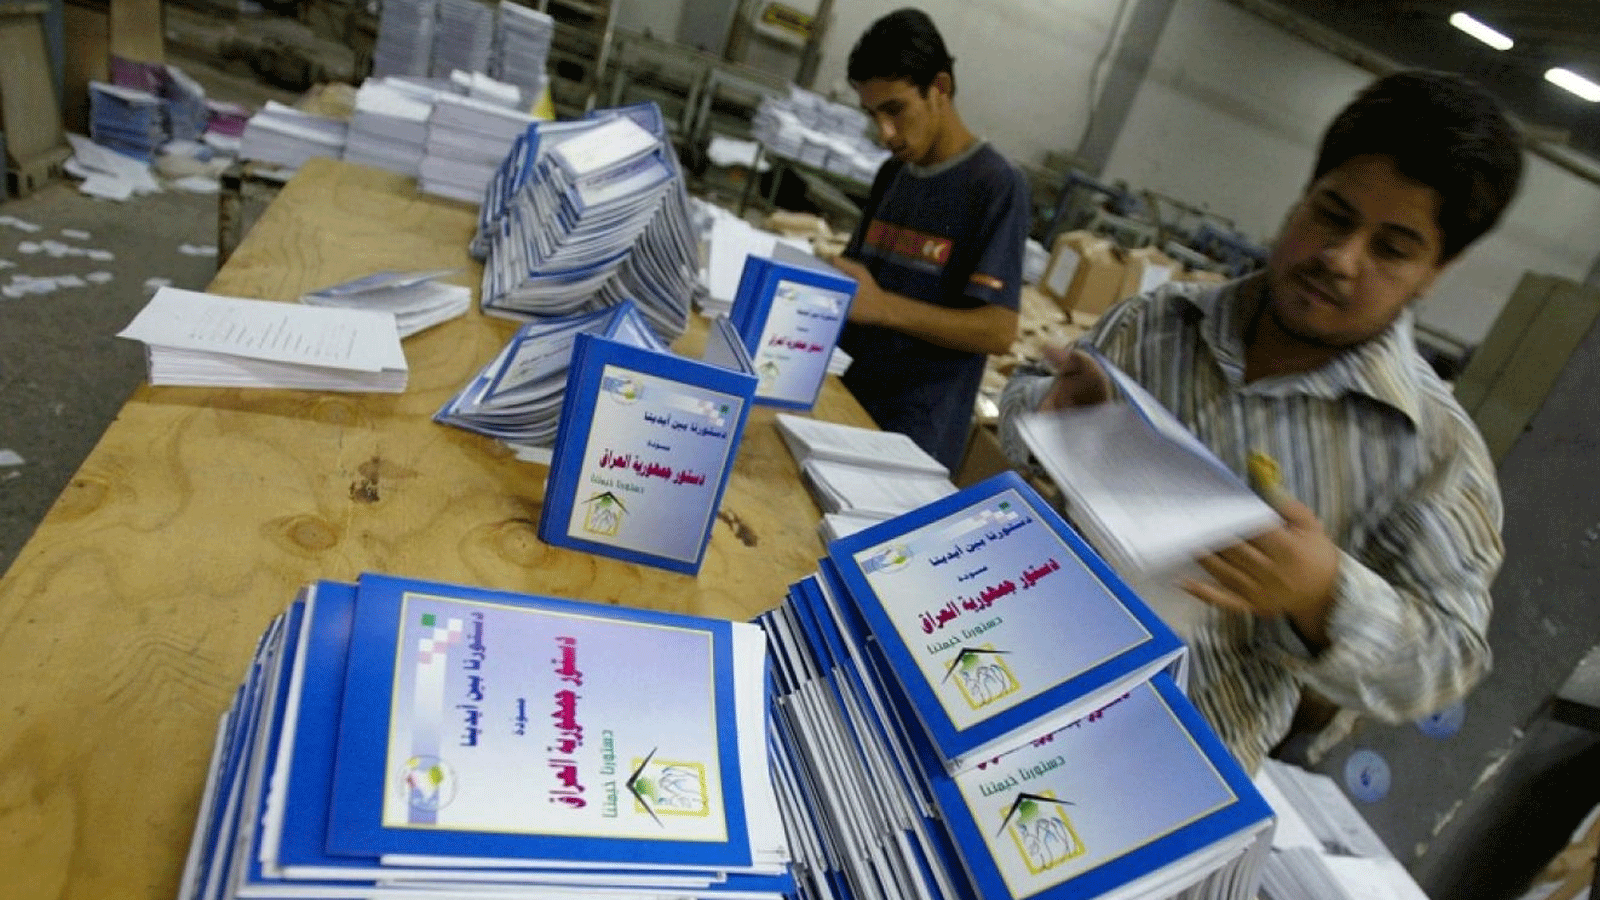 عراقيون يطالعون نسخاً من الدستور الجديد لبلادهم الموافق عليه في استفتاء شعبي عام 2005